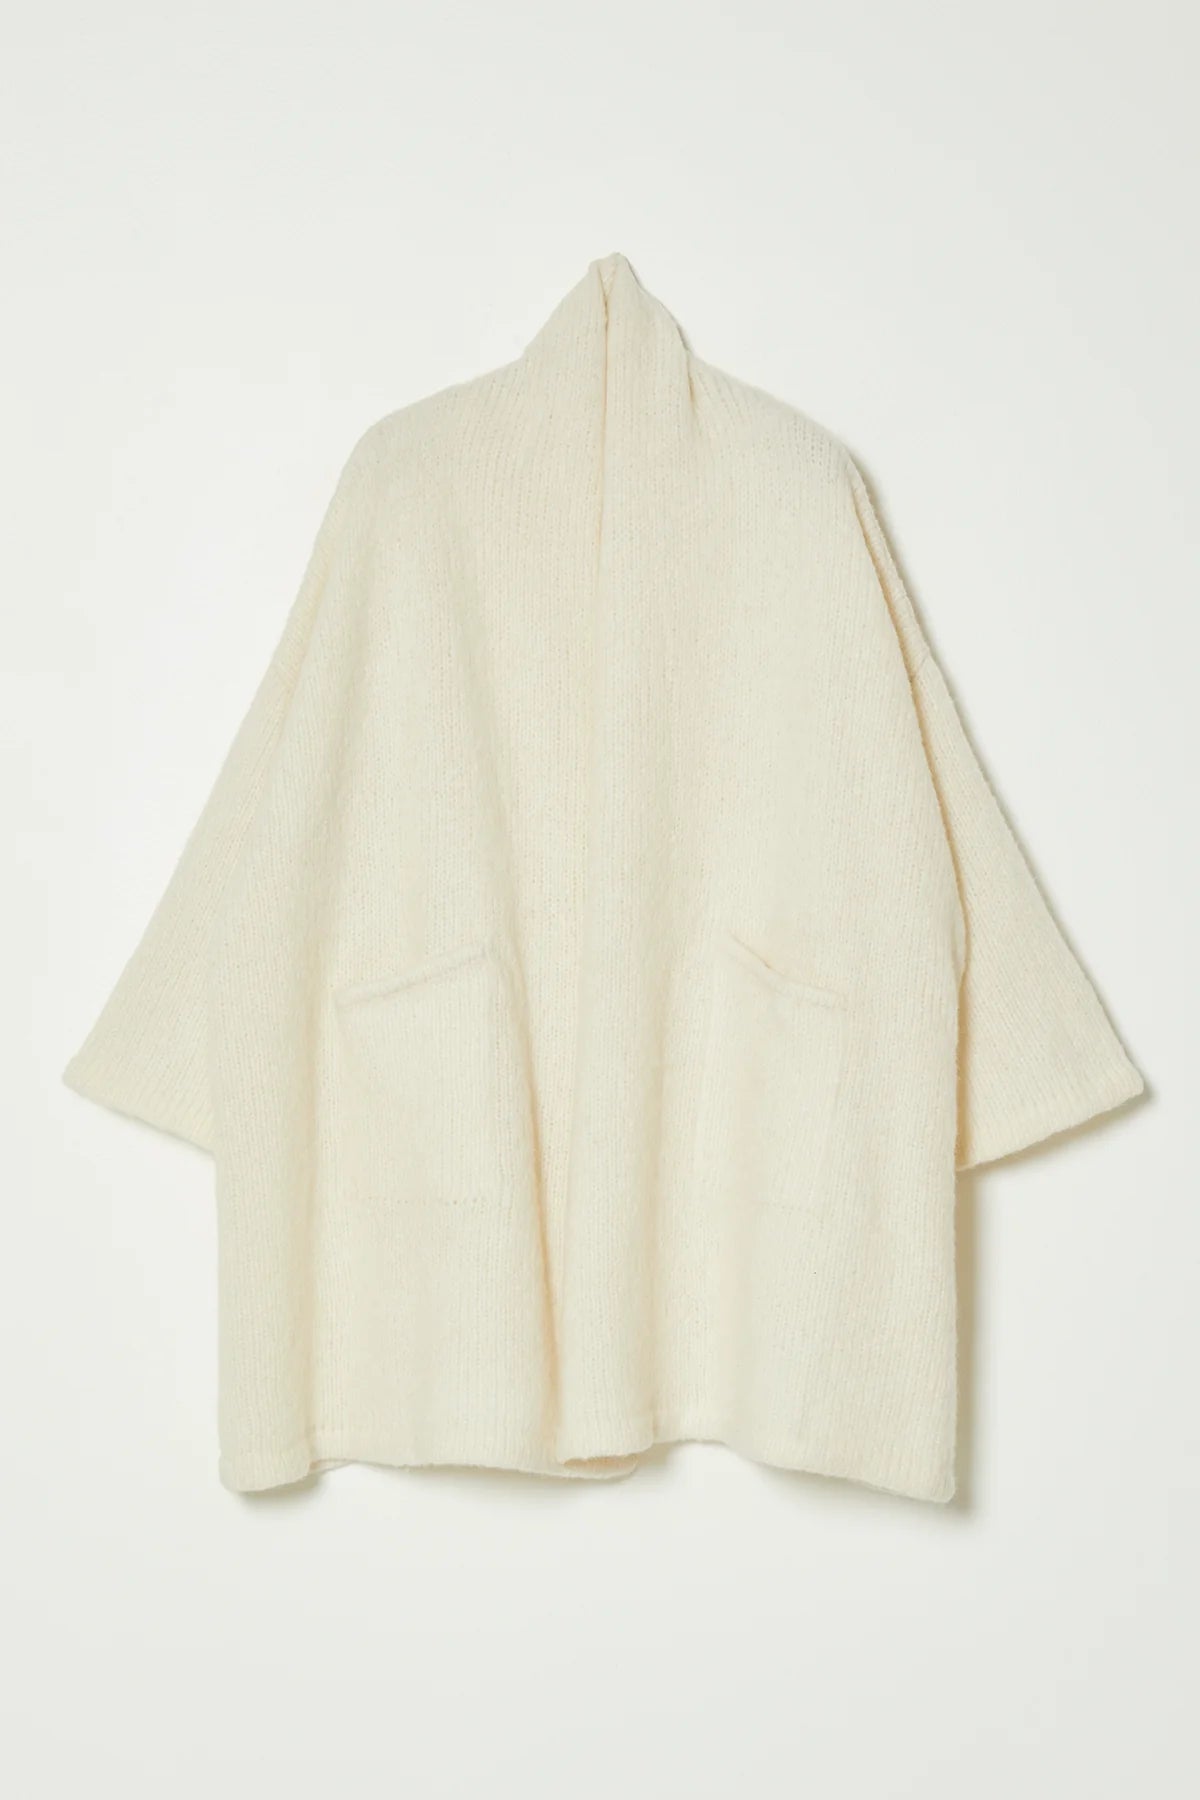 Atelier Delphine | Haori Coat in Baby Alpaca - Cream